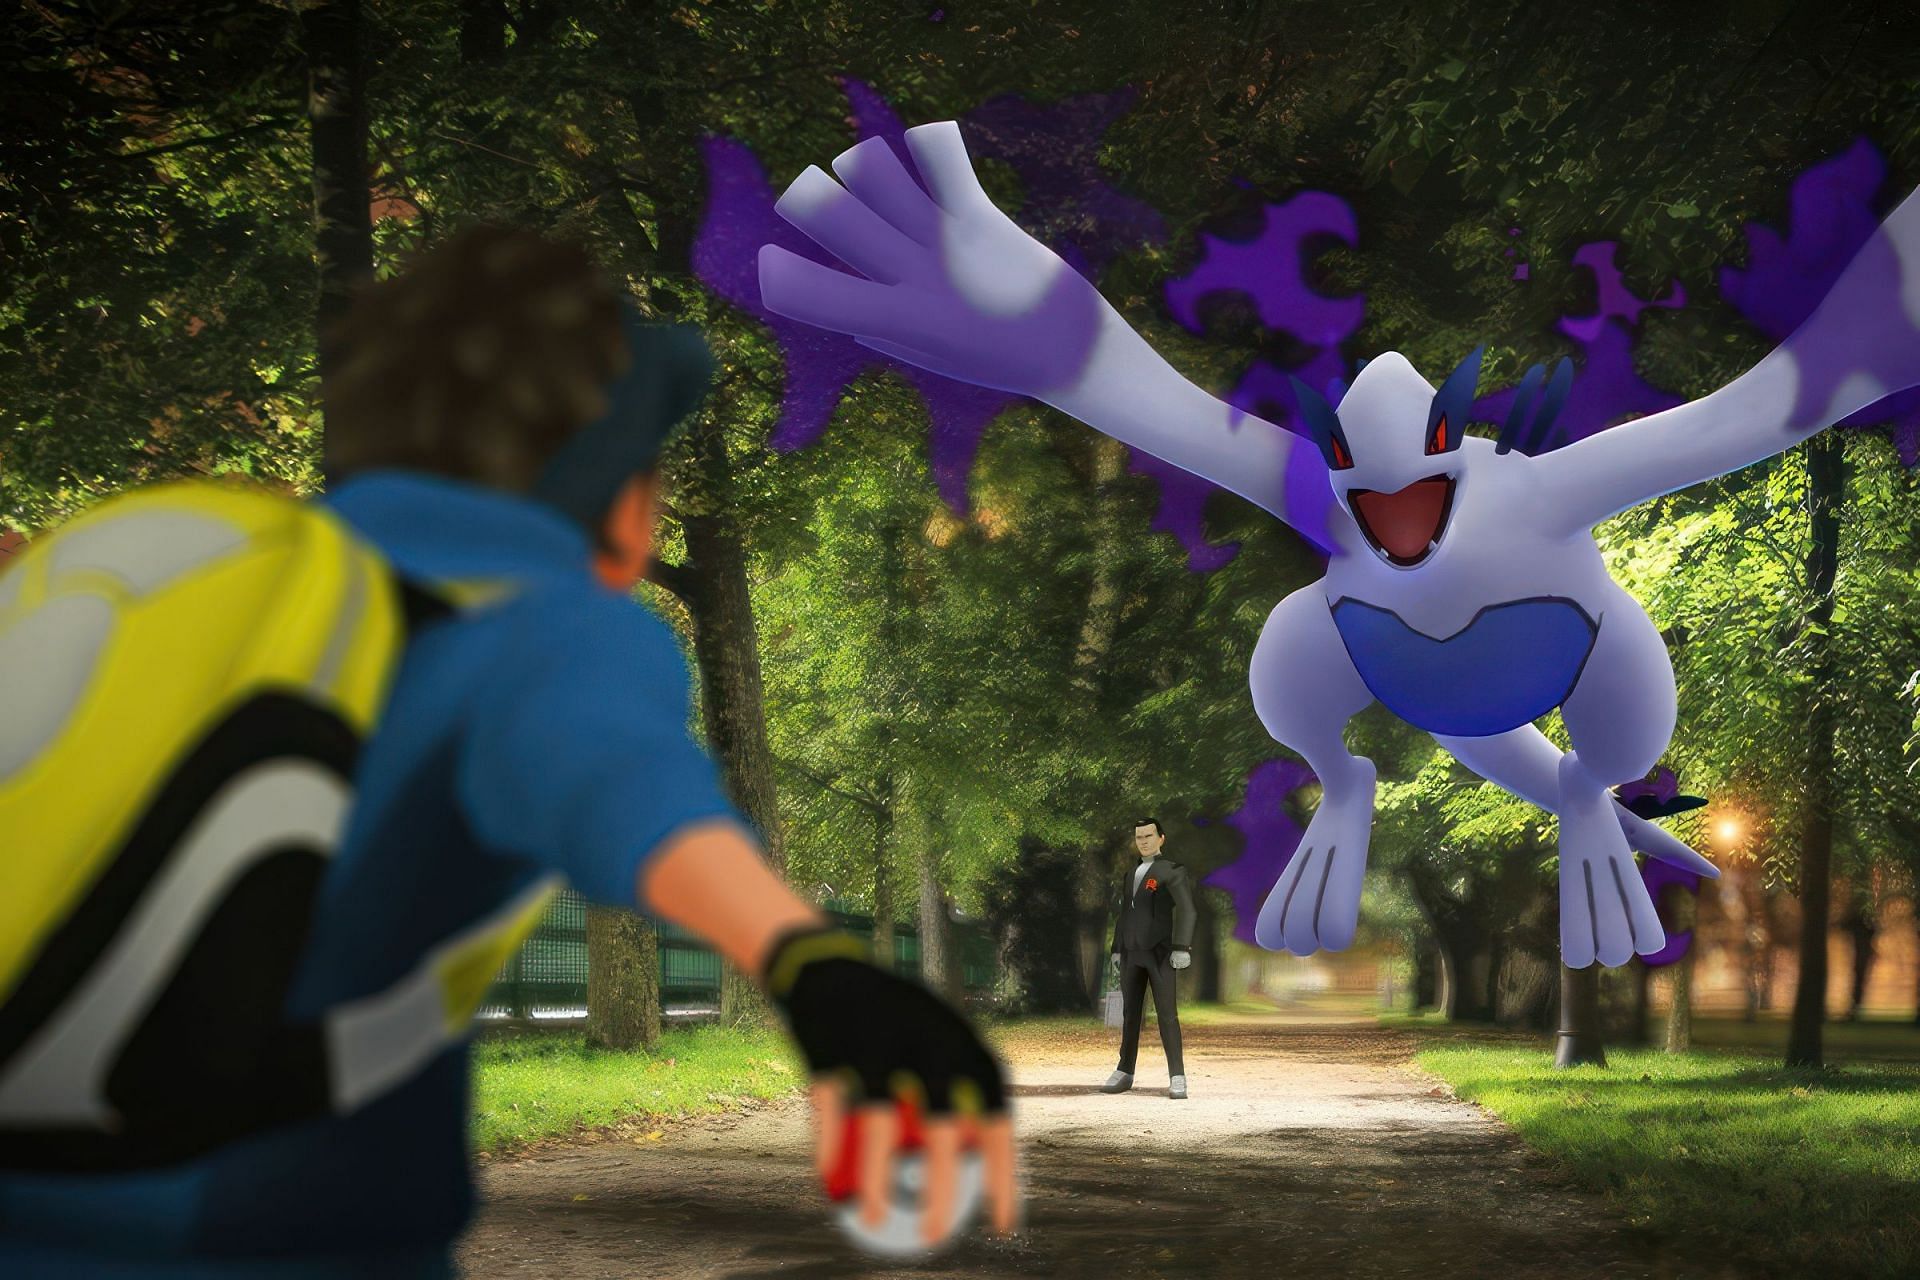 Lugia Pokémon GO Raid Battle Tips